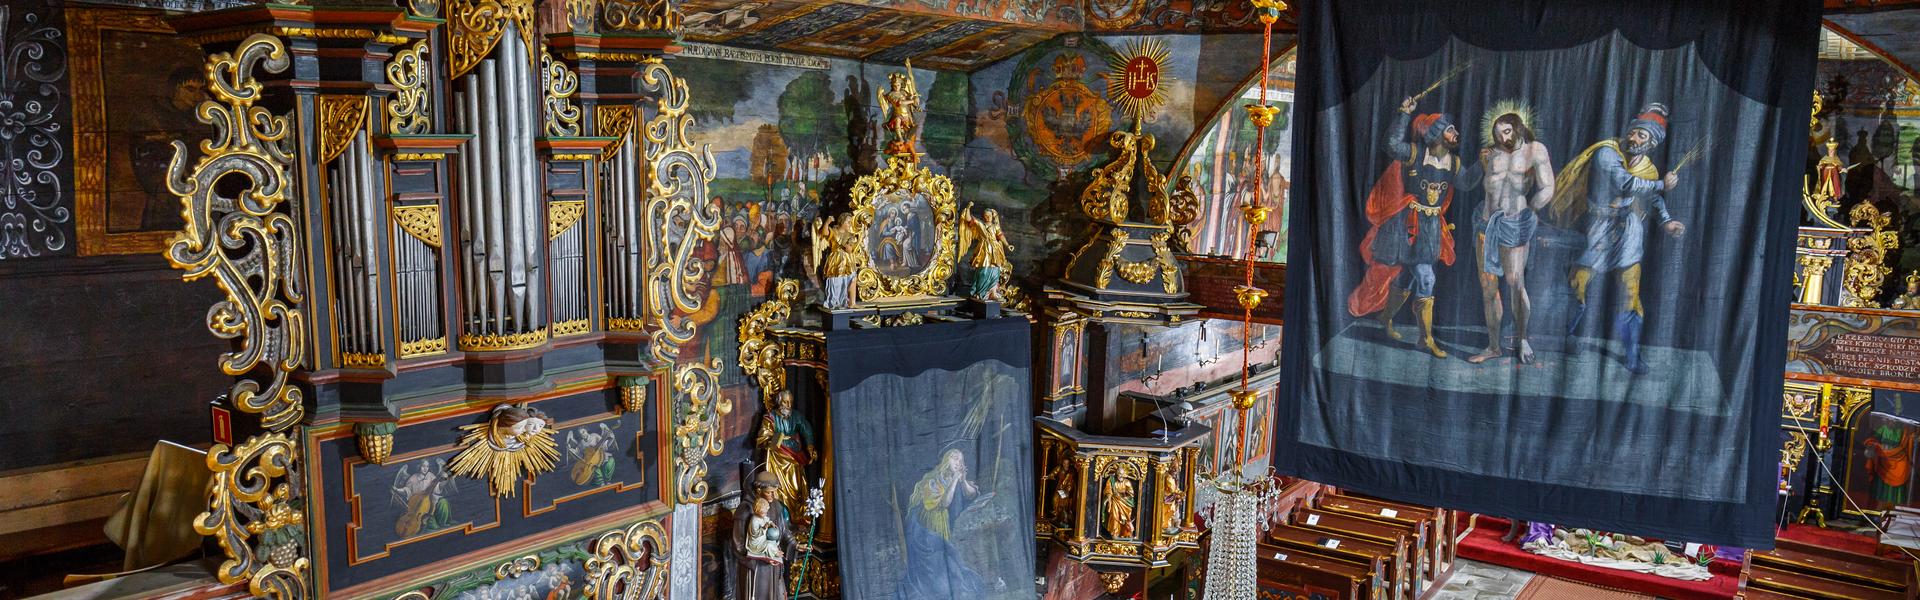 Wnętrze kościoła. Belka tęczowa oraz ołtarz boczny zasłonięte dużymi ciemnymi płótnami. Na jednym z nich namalowano scenę biczowania Chrystusa, na drugim Marie Magdalenę.